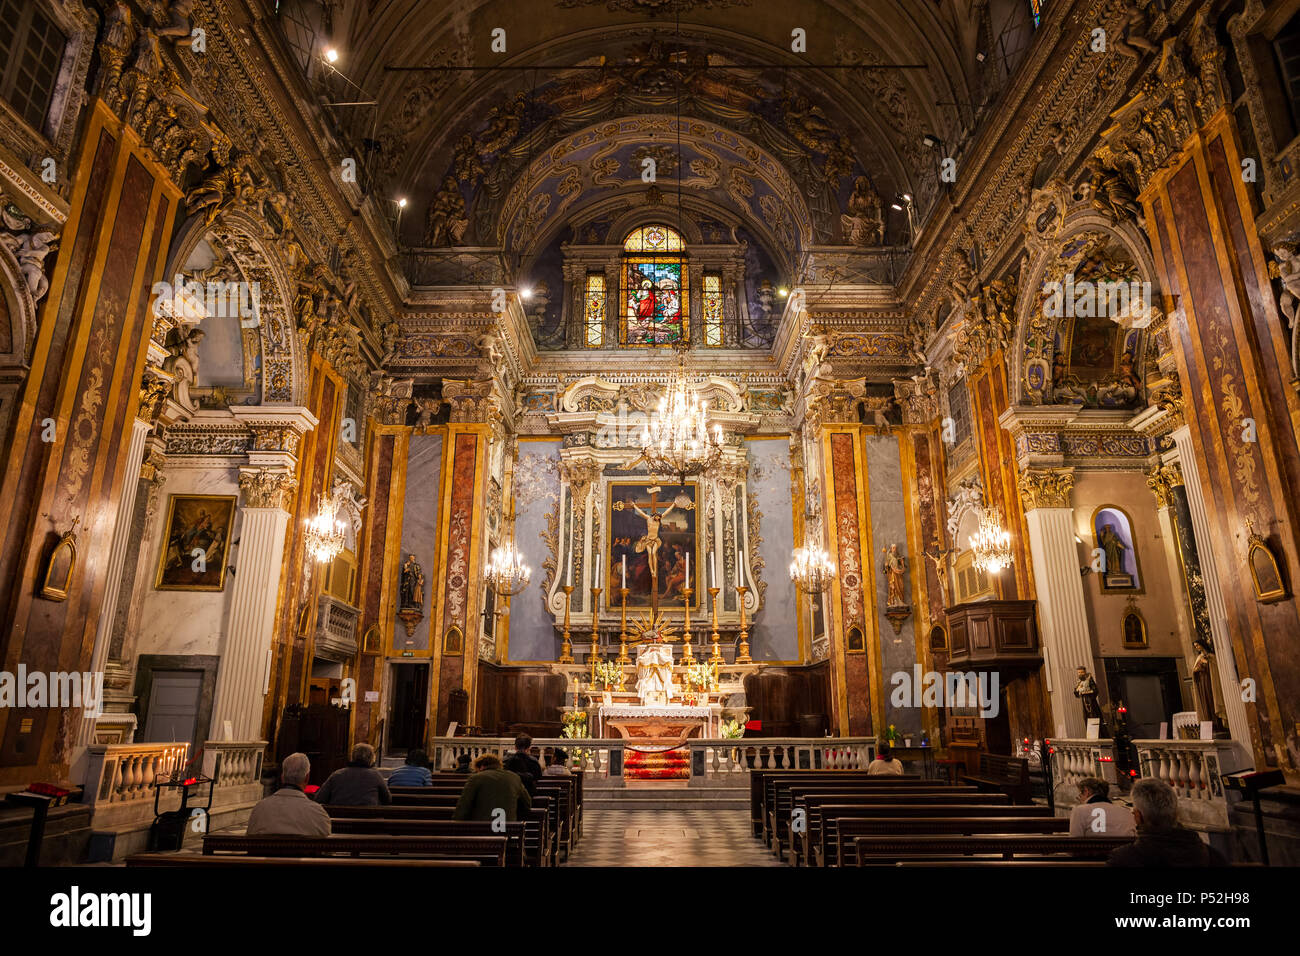 Francia, bella città, chiesa di Saint Jacques le Majeur o Chiesa del Gesu interno, ornato altare barocco Foto Stock